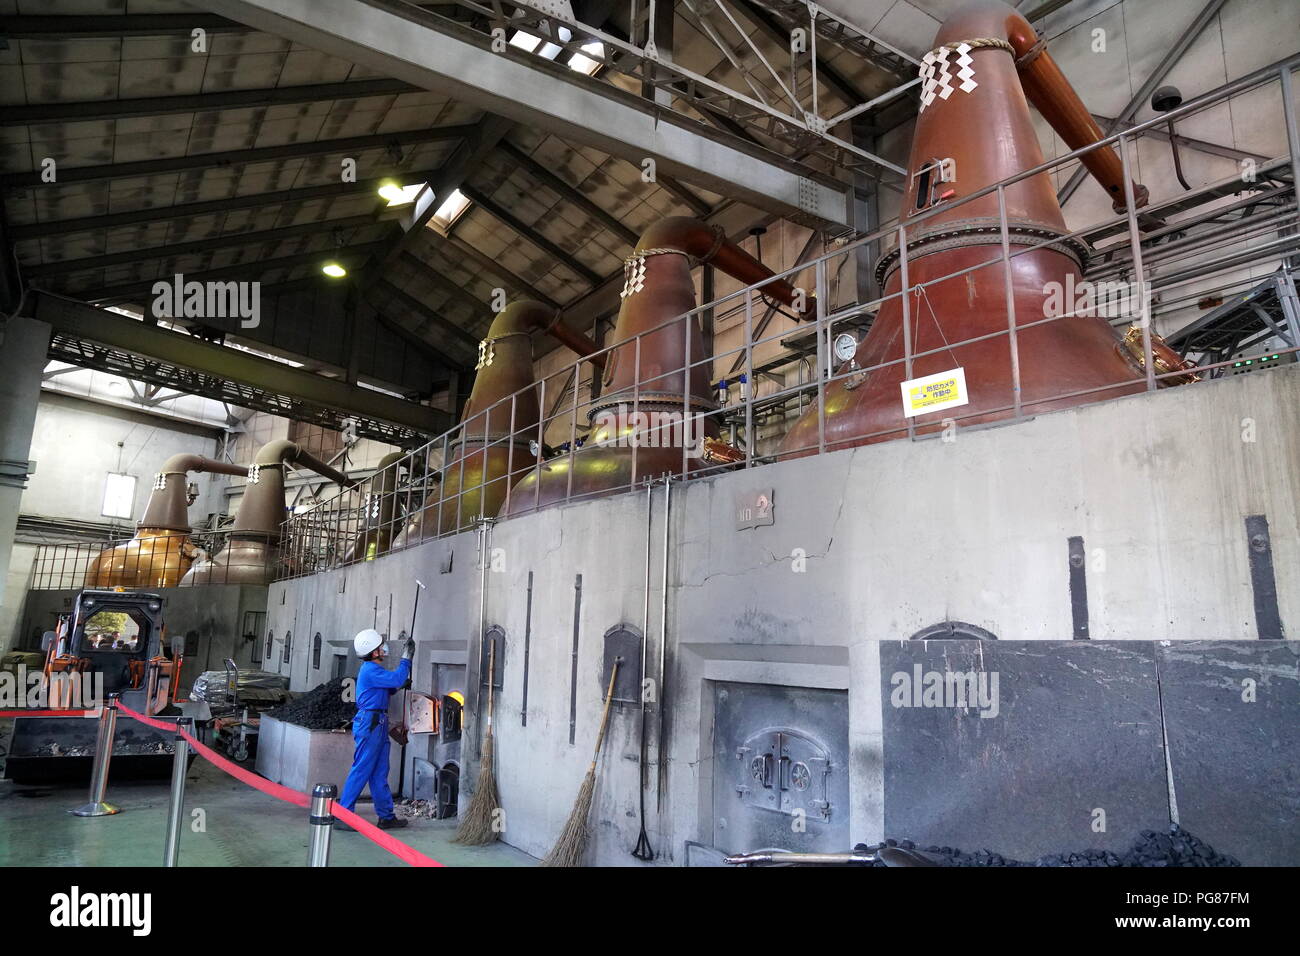 Hokkaido Asahi la Fabbrica di Birra di Sapporo, Hokkaido, Giappone. Un lavoratore di mettere il carbone nel forno con le impressionanti immagini fisse che incombe sopra. Foto Stock